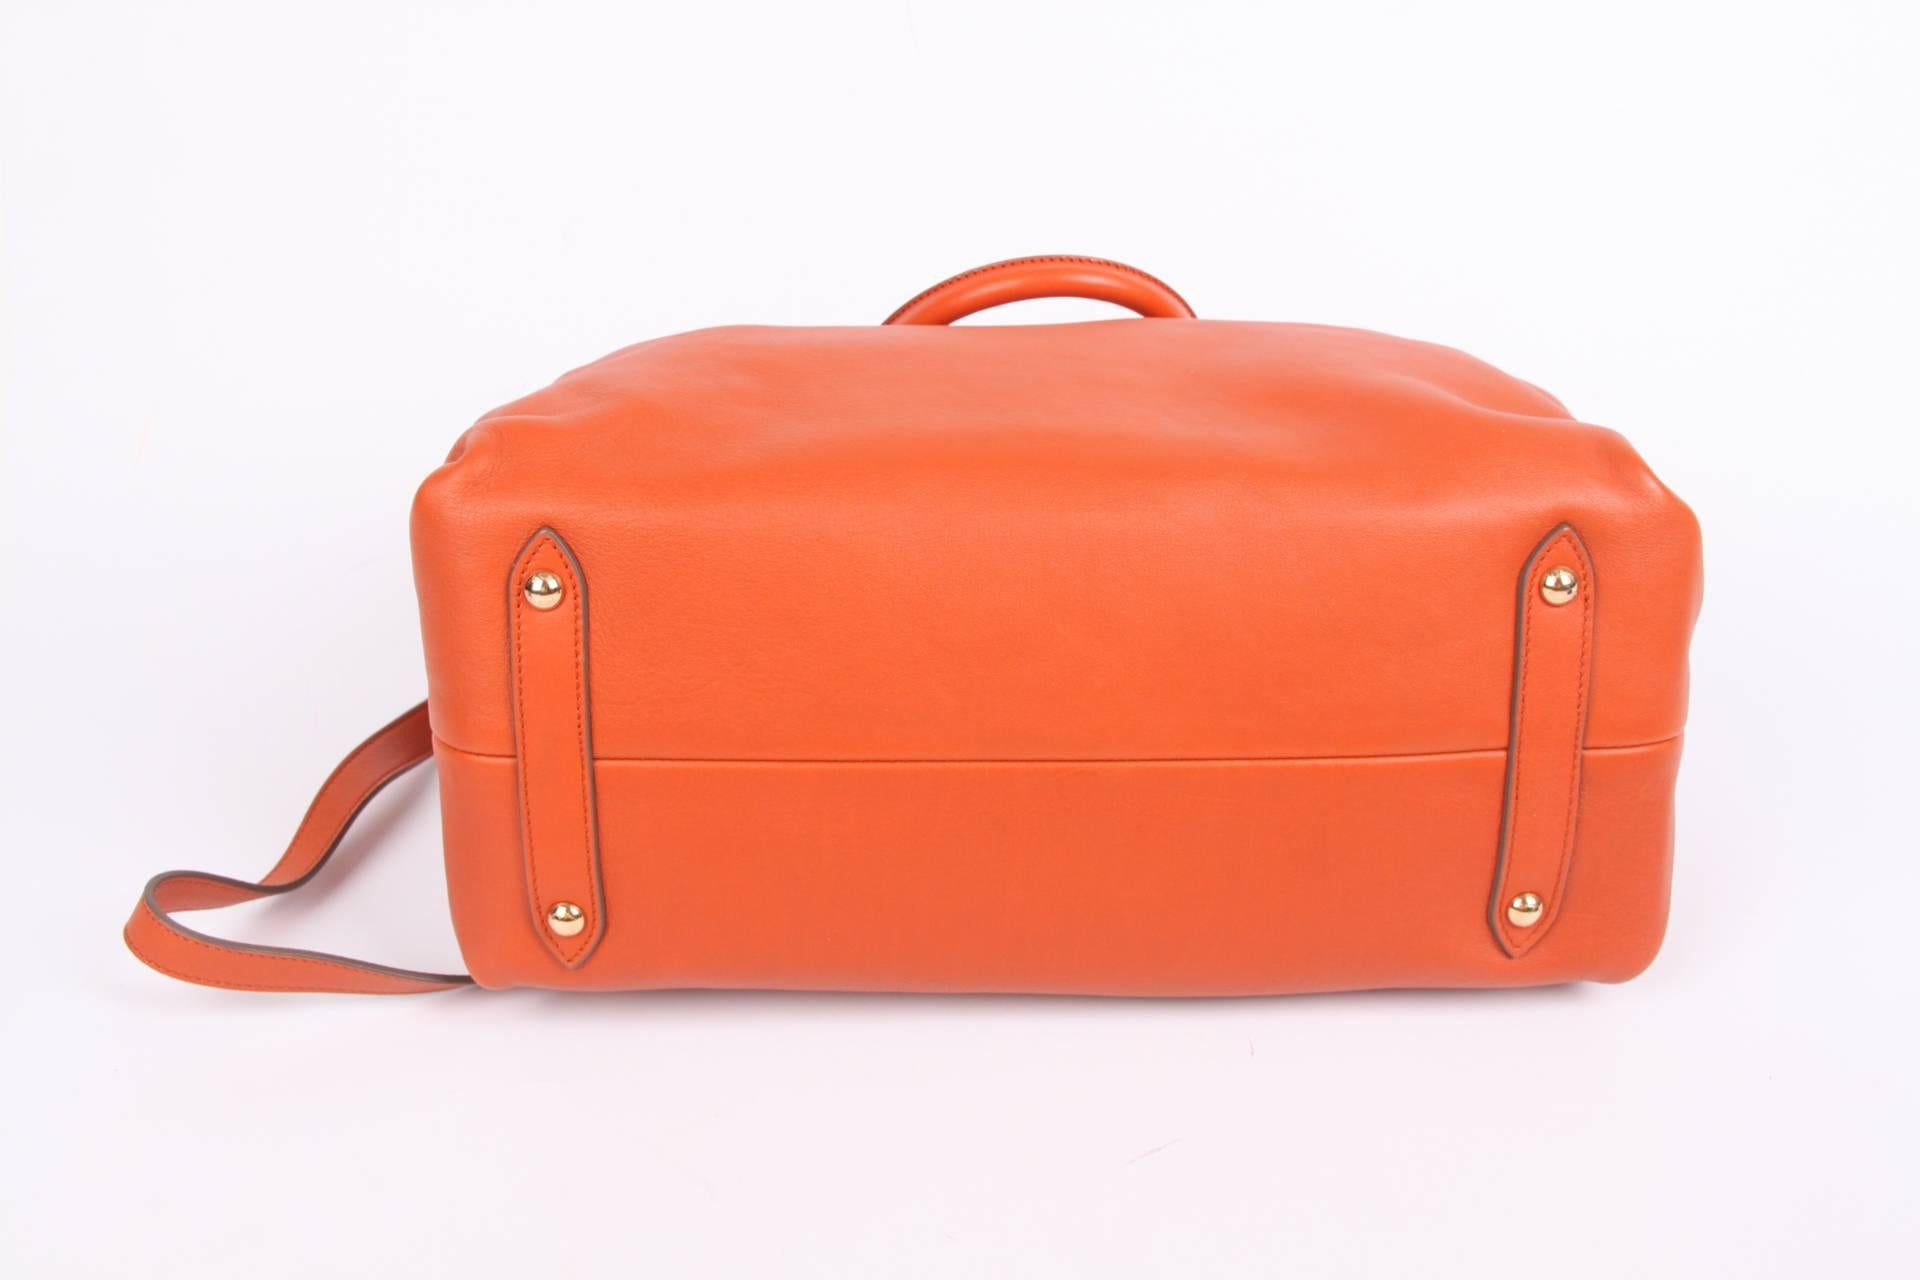 Orange Salvatore Ferragamo Leather Buckled Tote Bag Visone - orange 